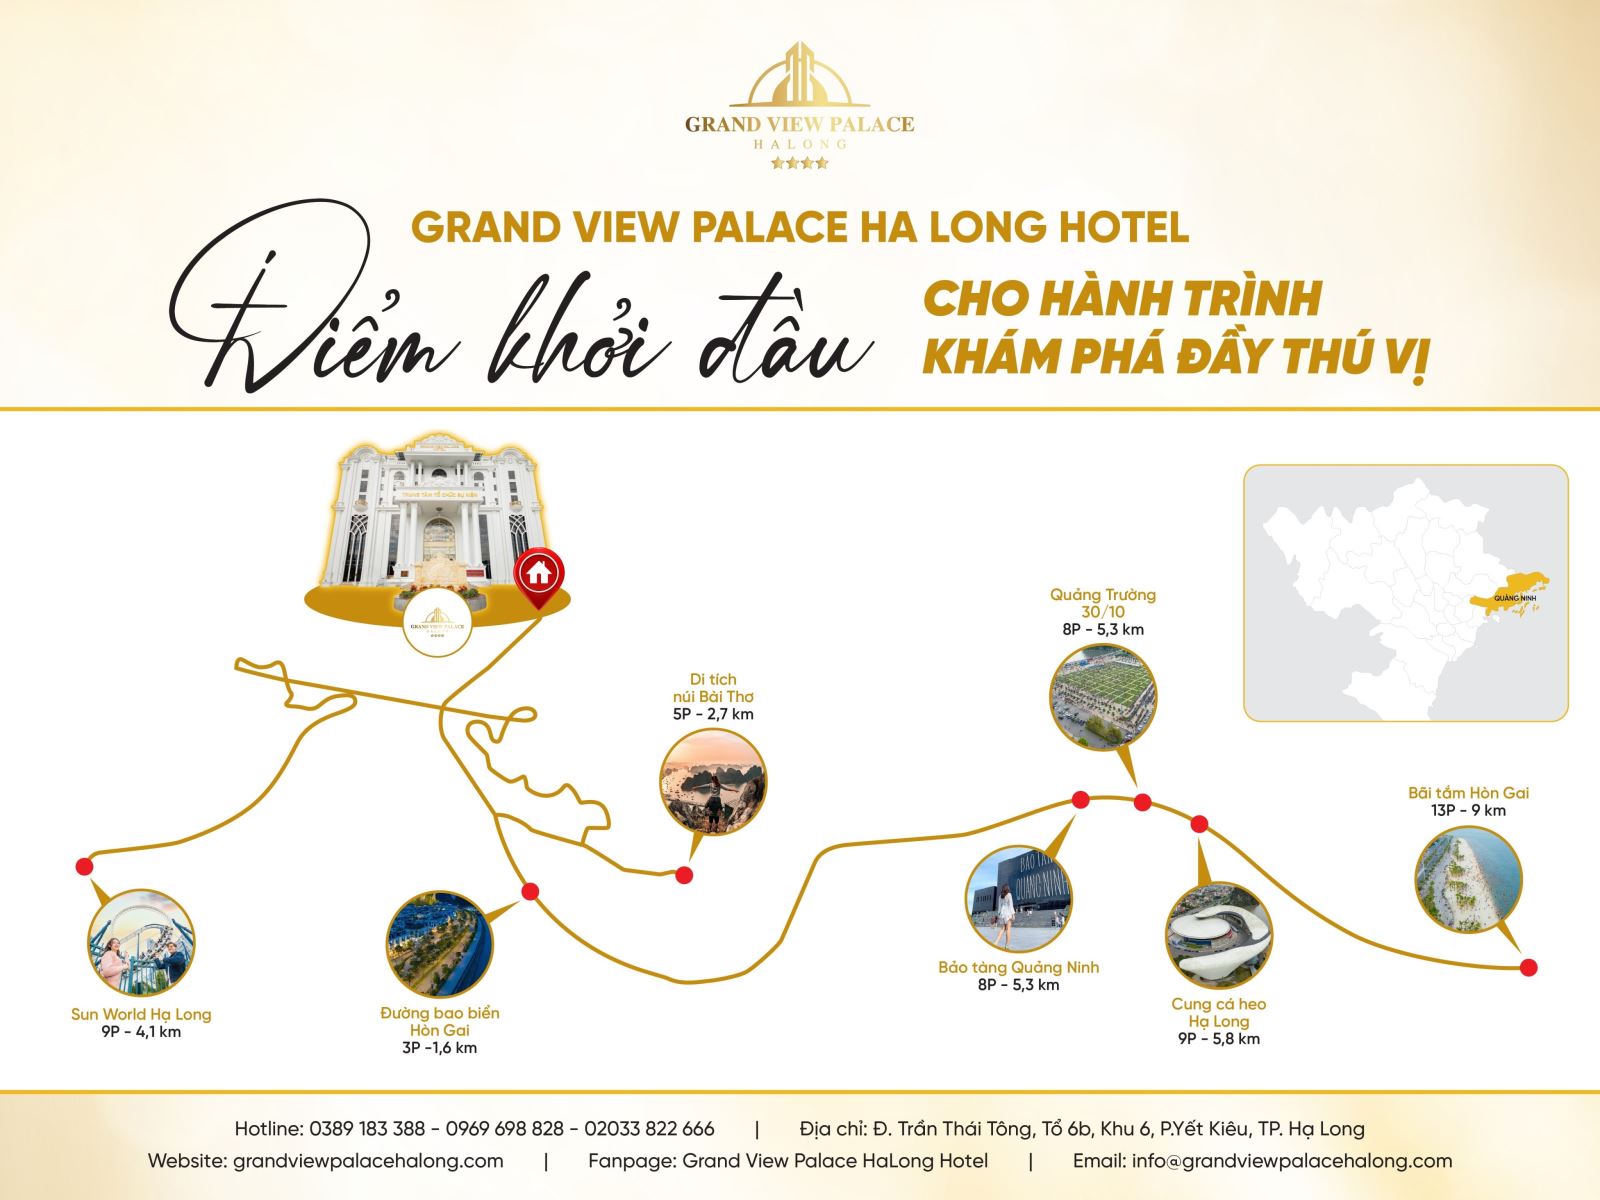 GRAND VIEW PALACE HALONG HOTEL - ĐIỂM KHỞI ĐẦU CHO HÀNH TRÌNH KHÁM PHÁ ĐẦY THÚ VỊ 